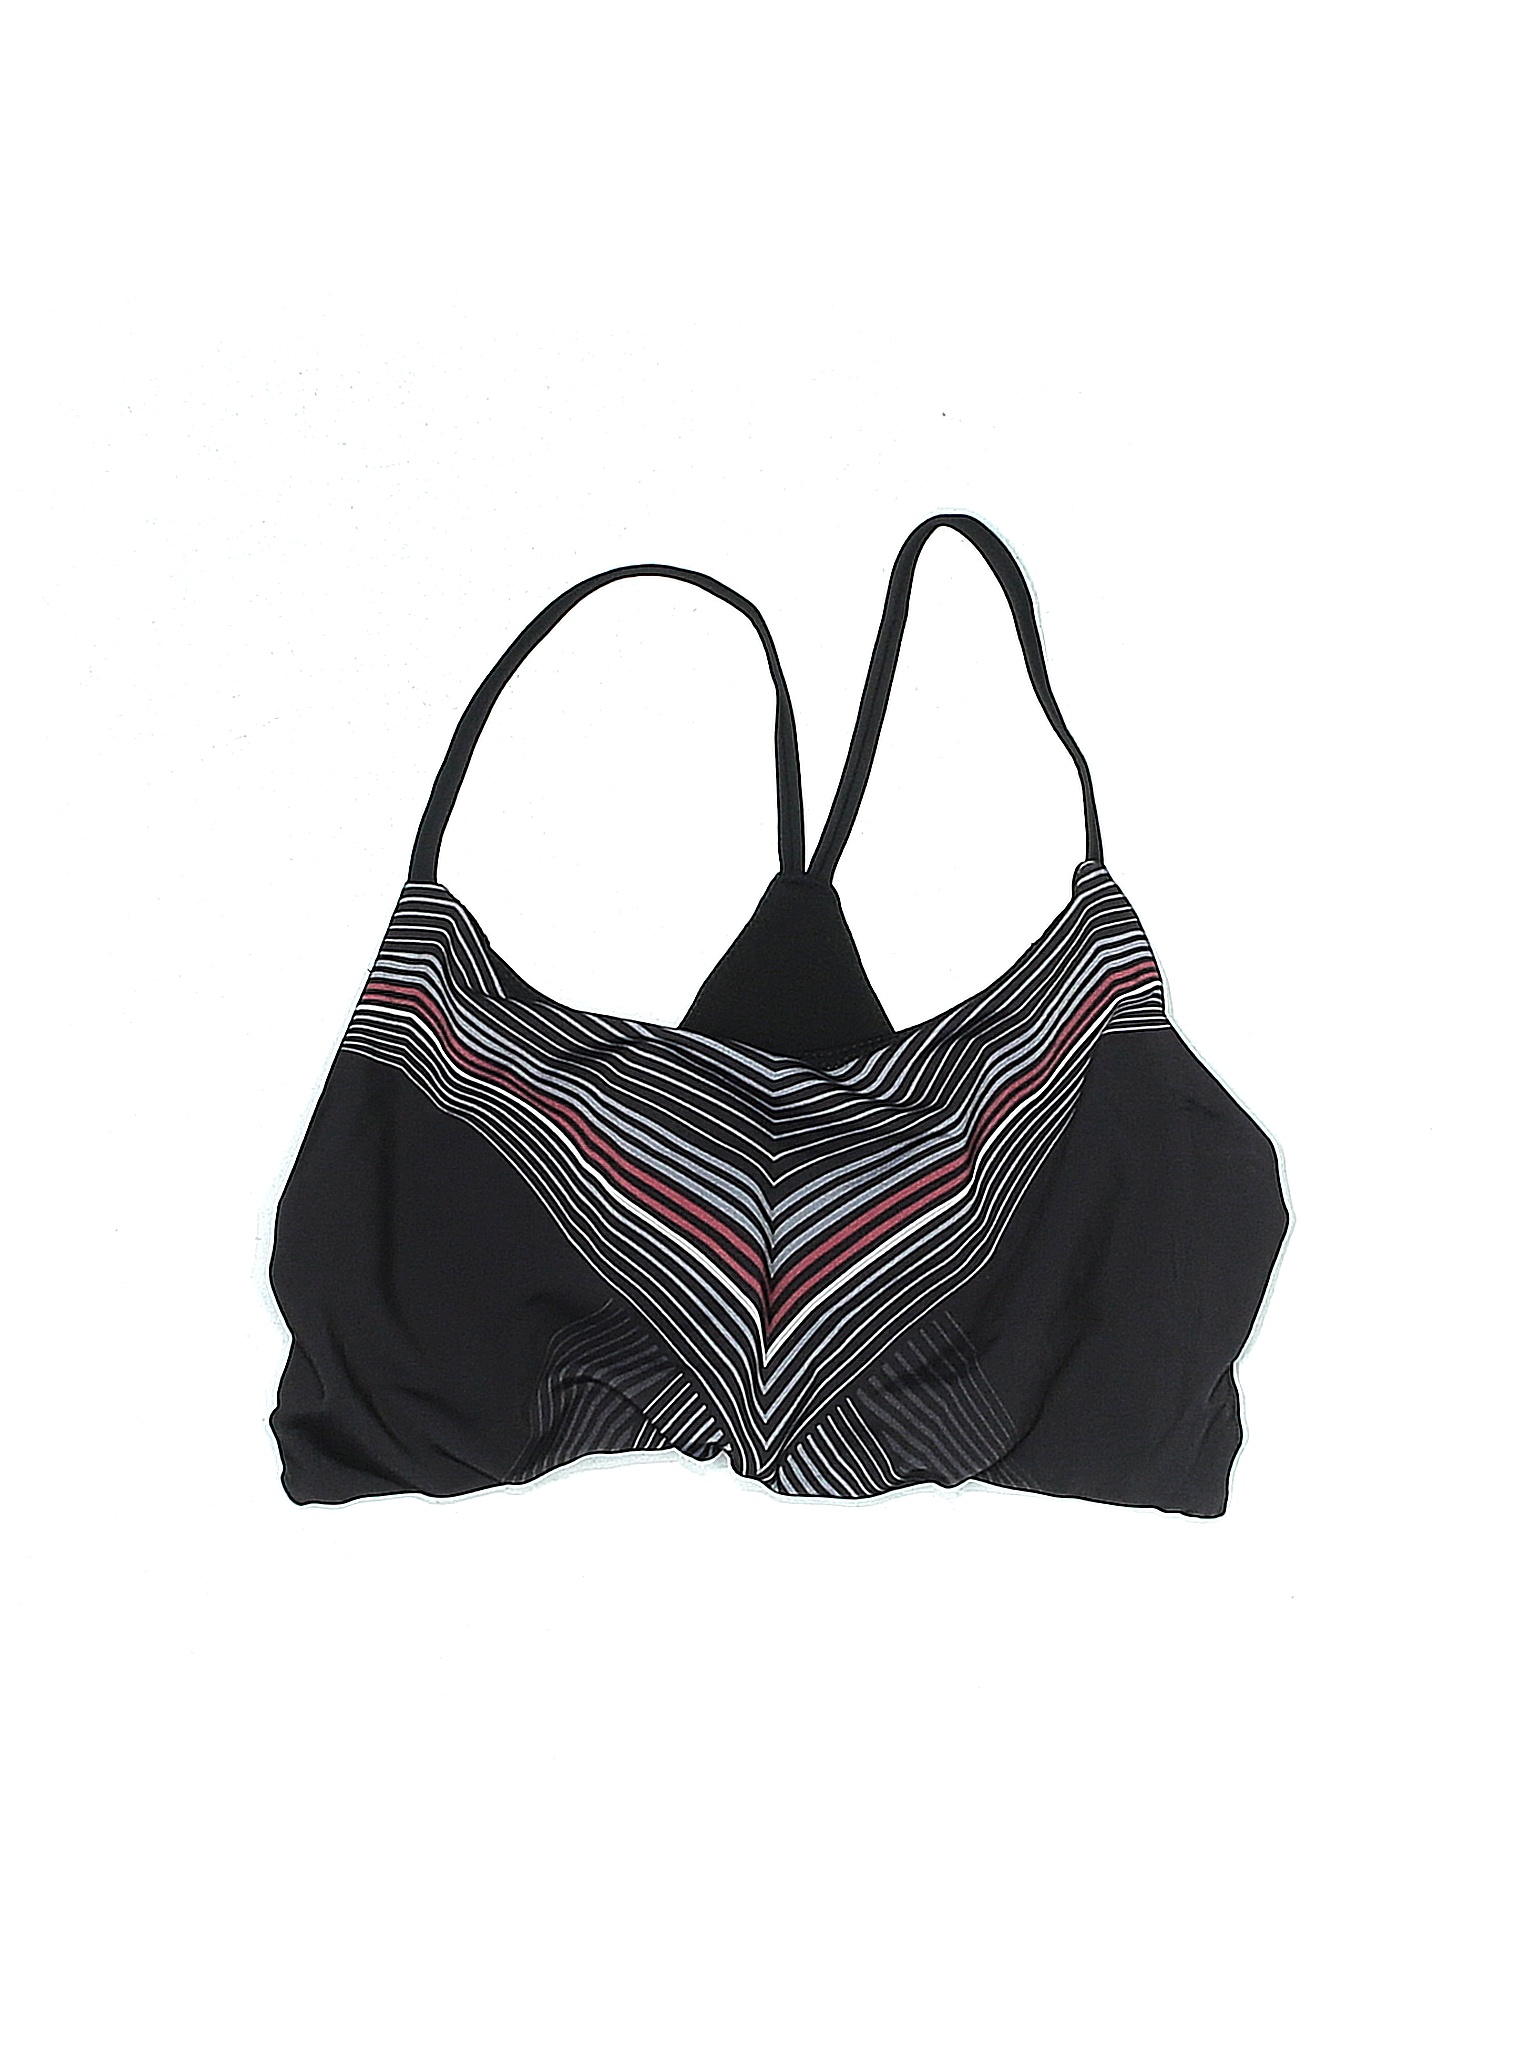 Onzie Black Swimsuit Top Size Med - Lg - 76% off | thredUP